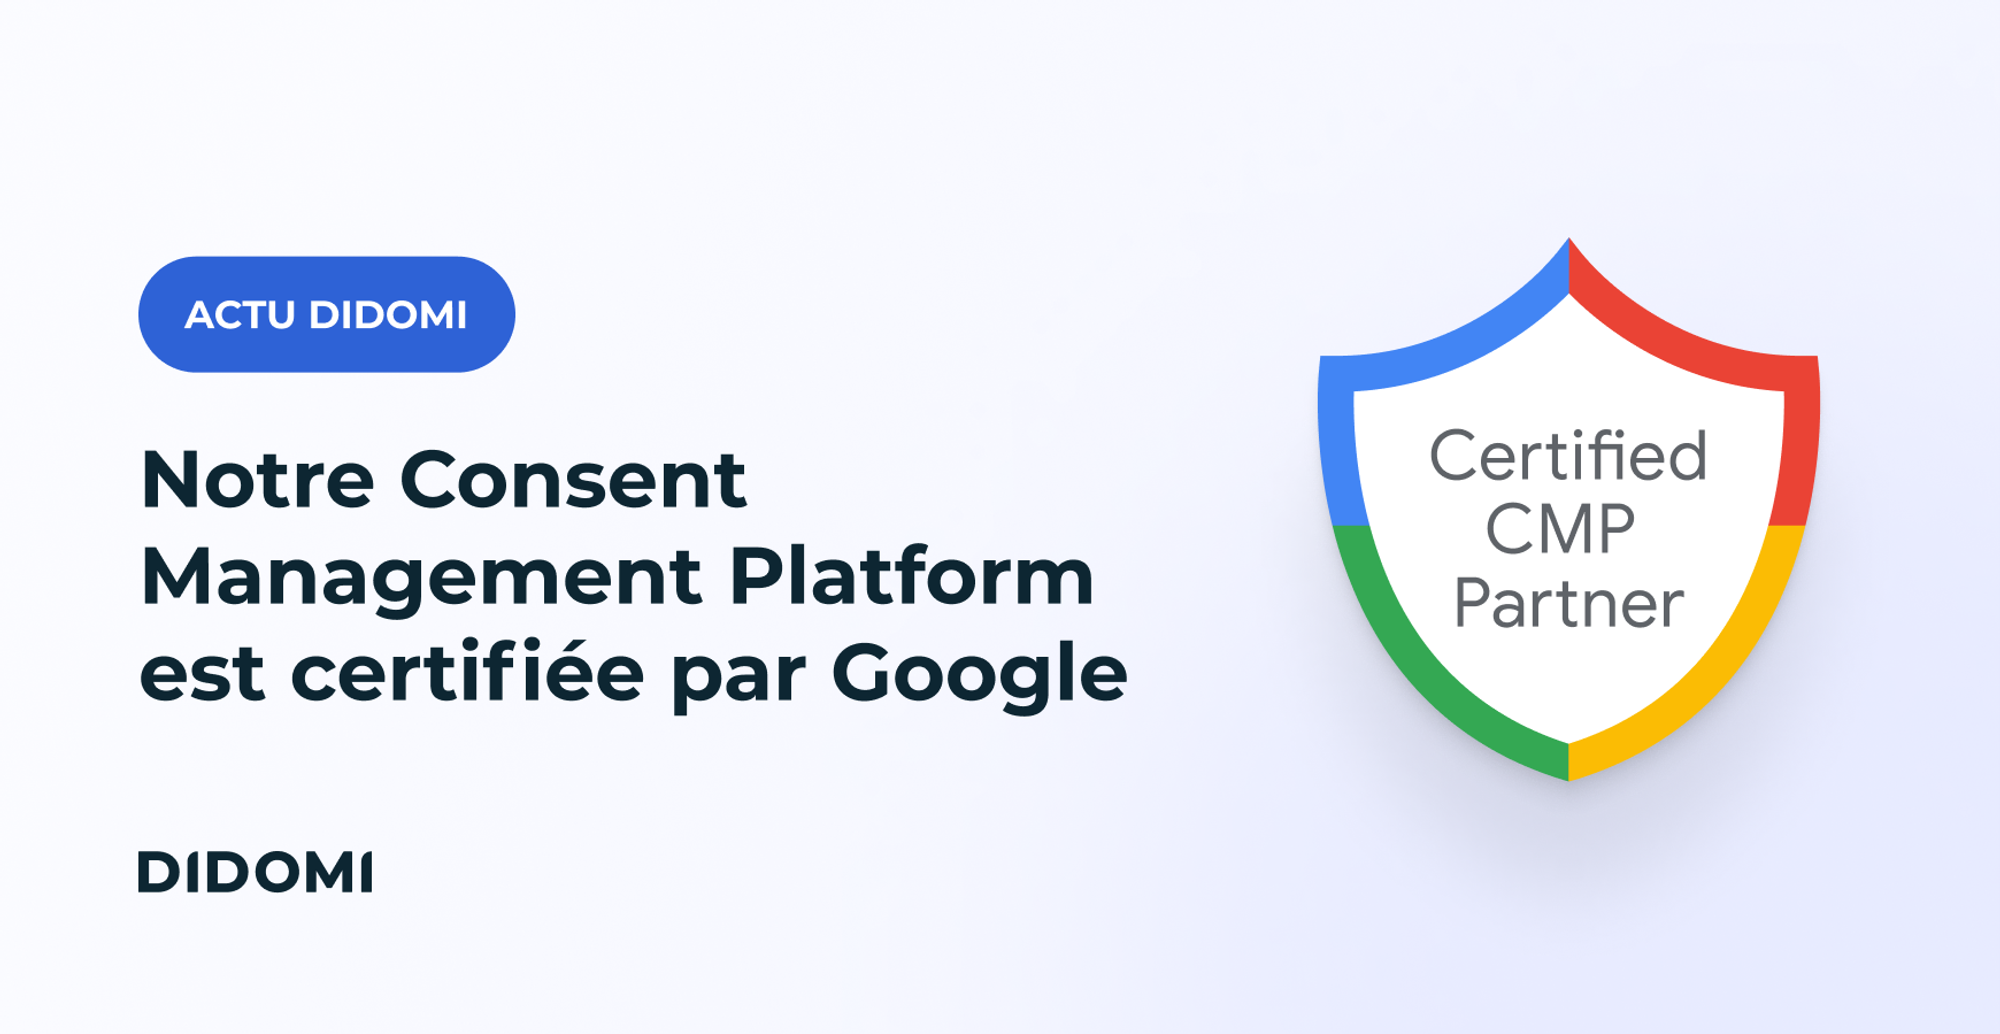 Le titre "Didomi Consent Management Platform CMP est certifiée par Google" est accompagné de la mention "Actus Didomi" et, sur la droite de l'image figure un badge aux couleurs de Google avec la mention "Certified CMP Partner"